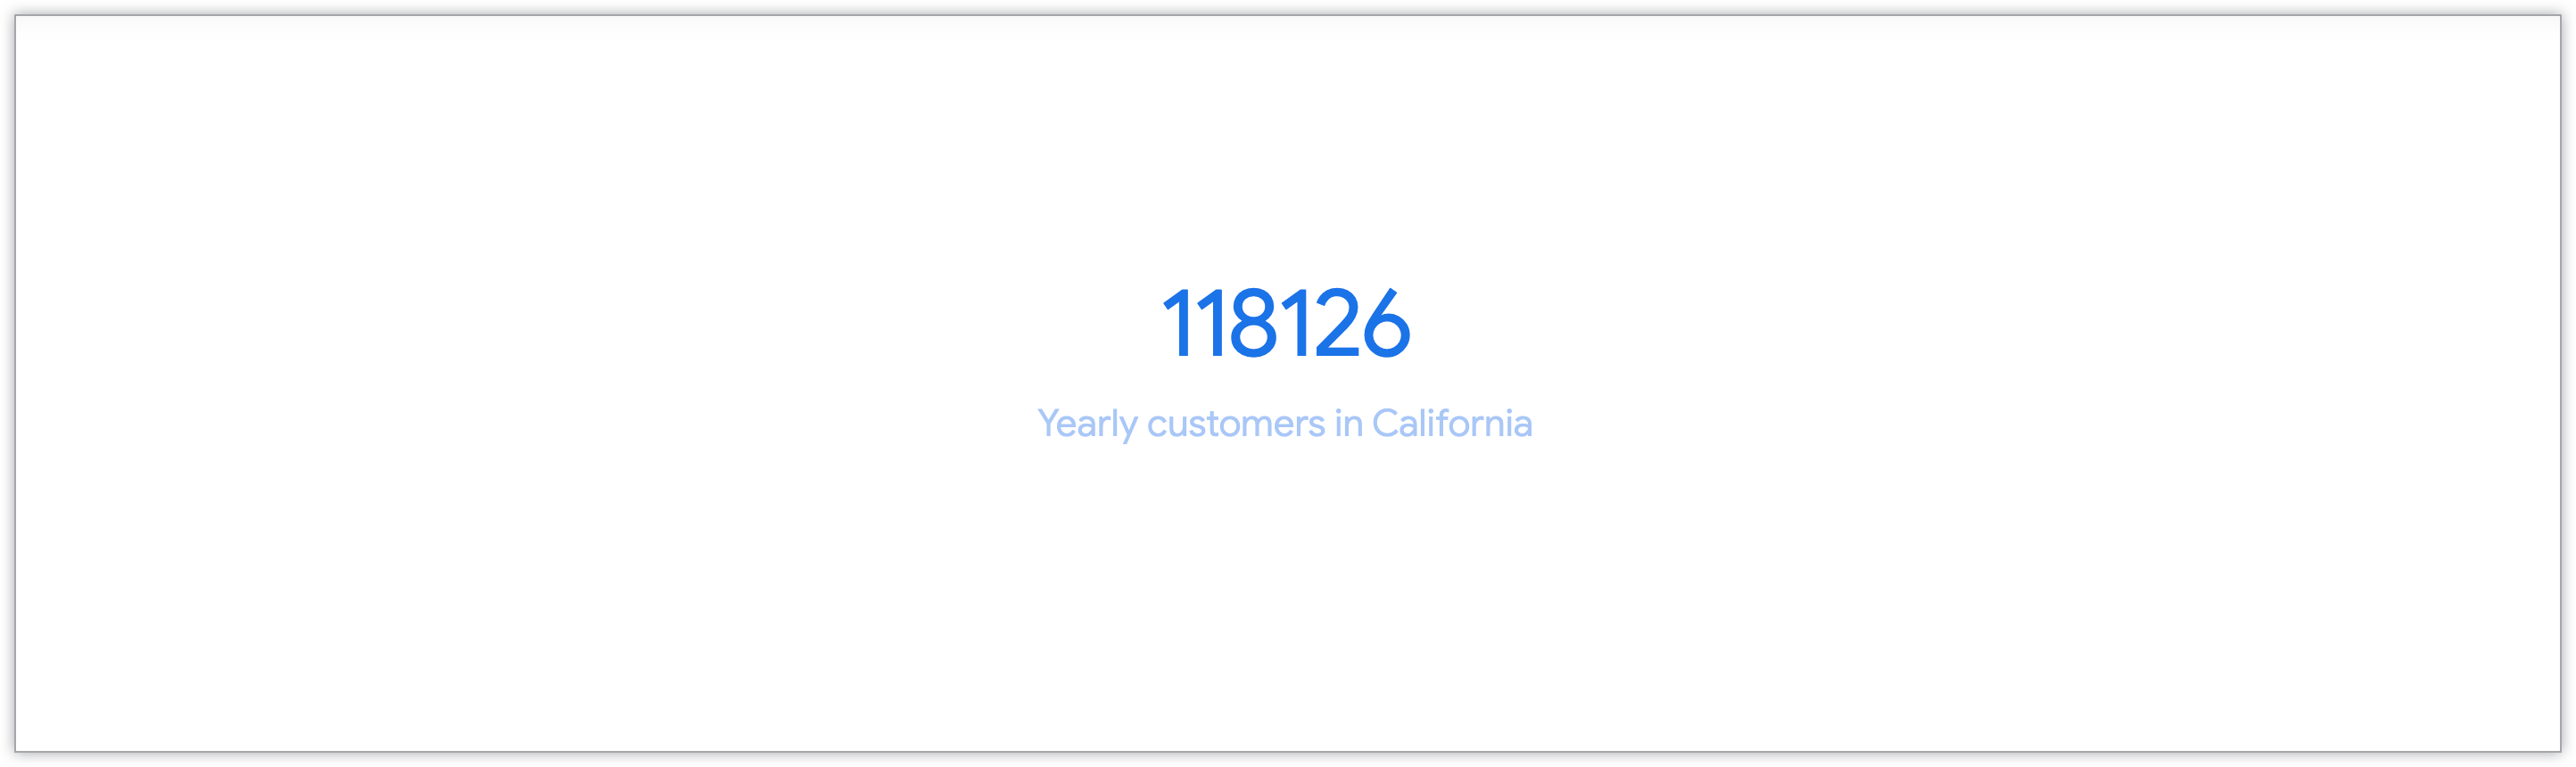 Graphique à valeur unique illustrant le nombre de clients annuels en Californie.